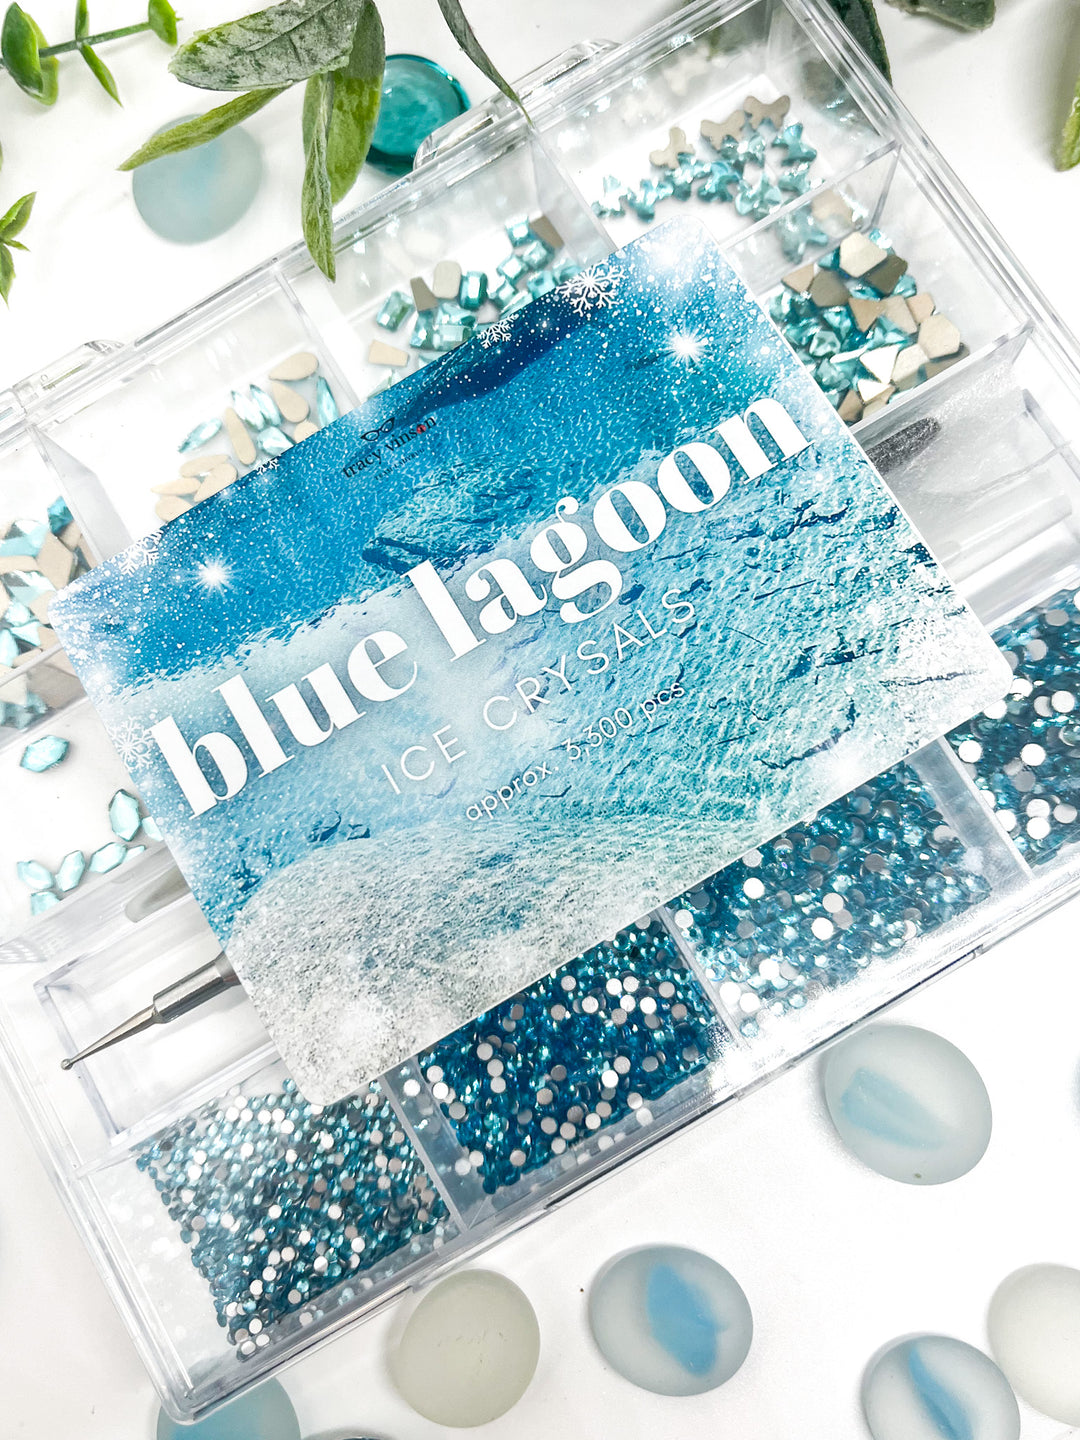 MM - Blue Lagoon Ice Crystals